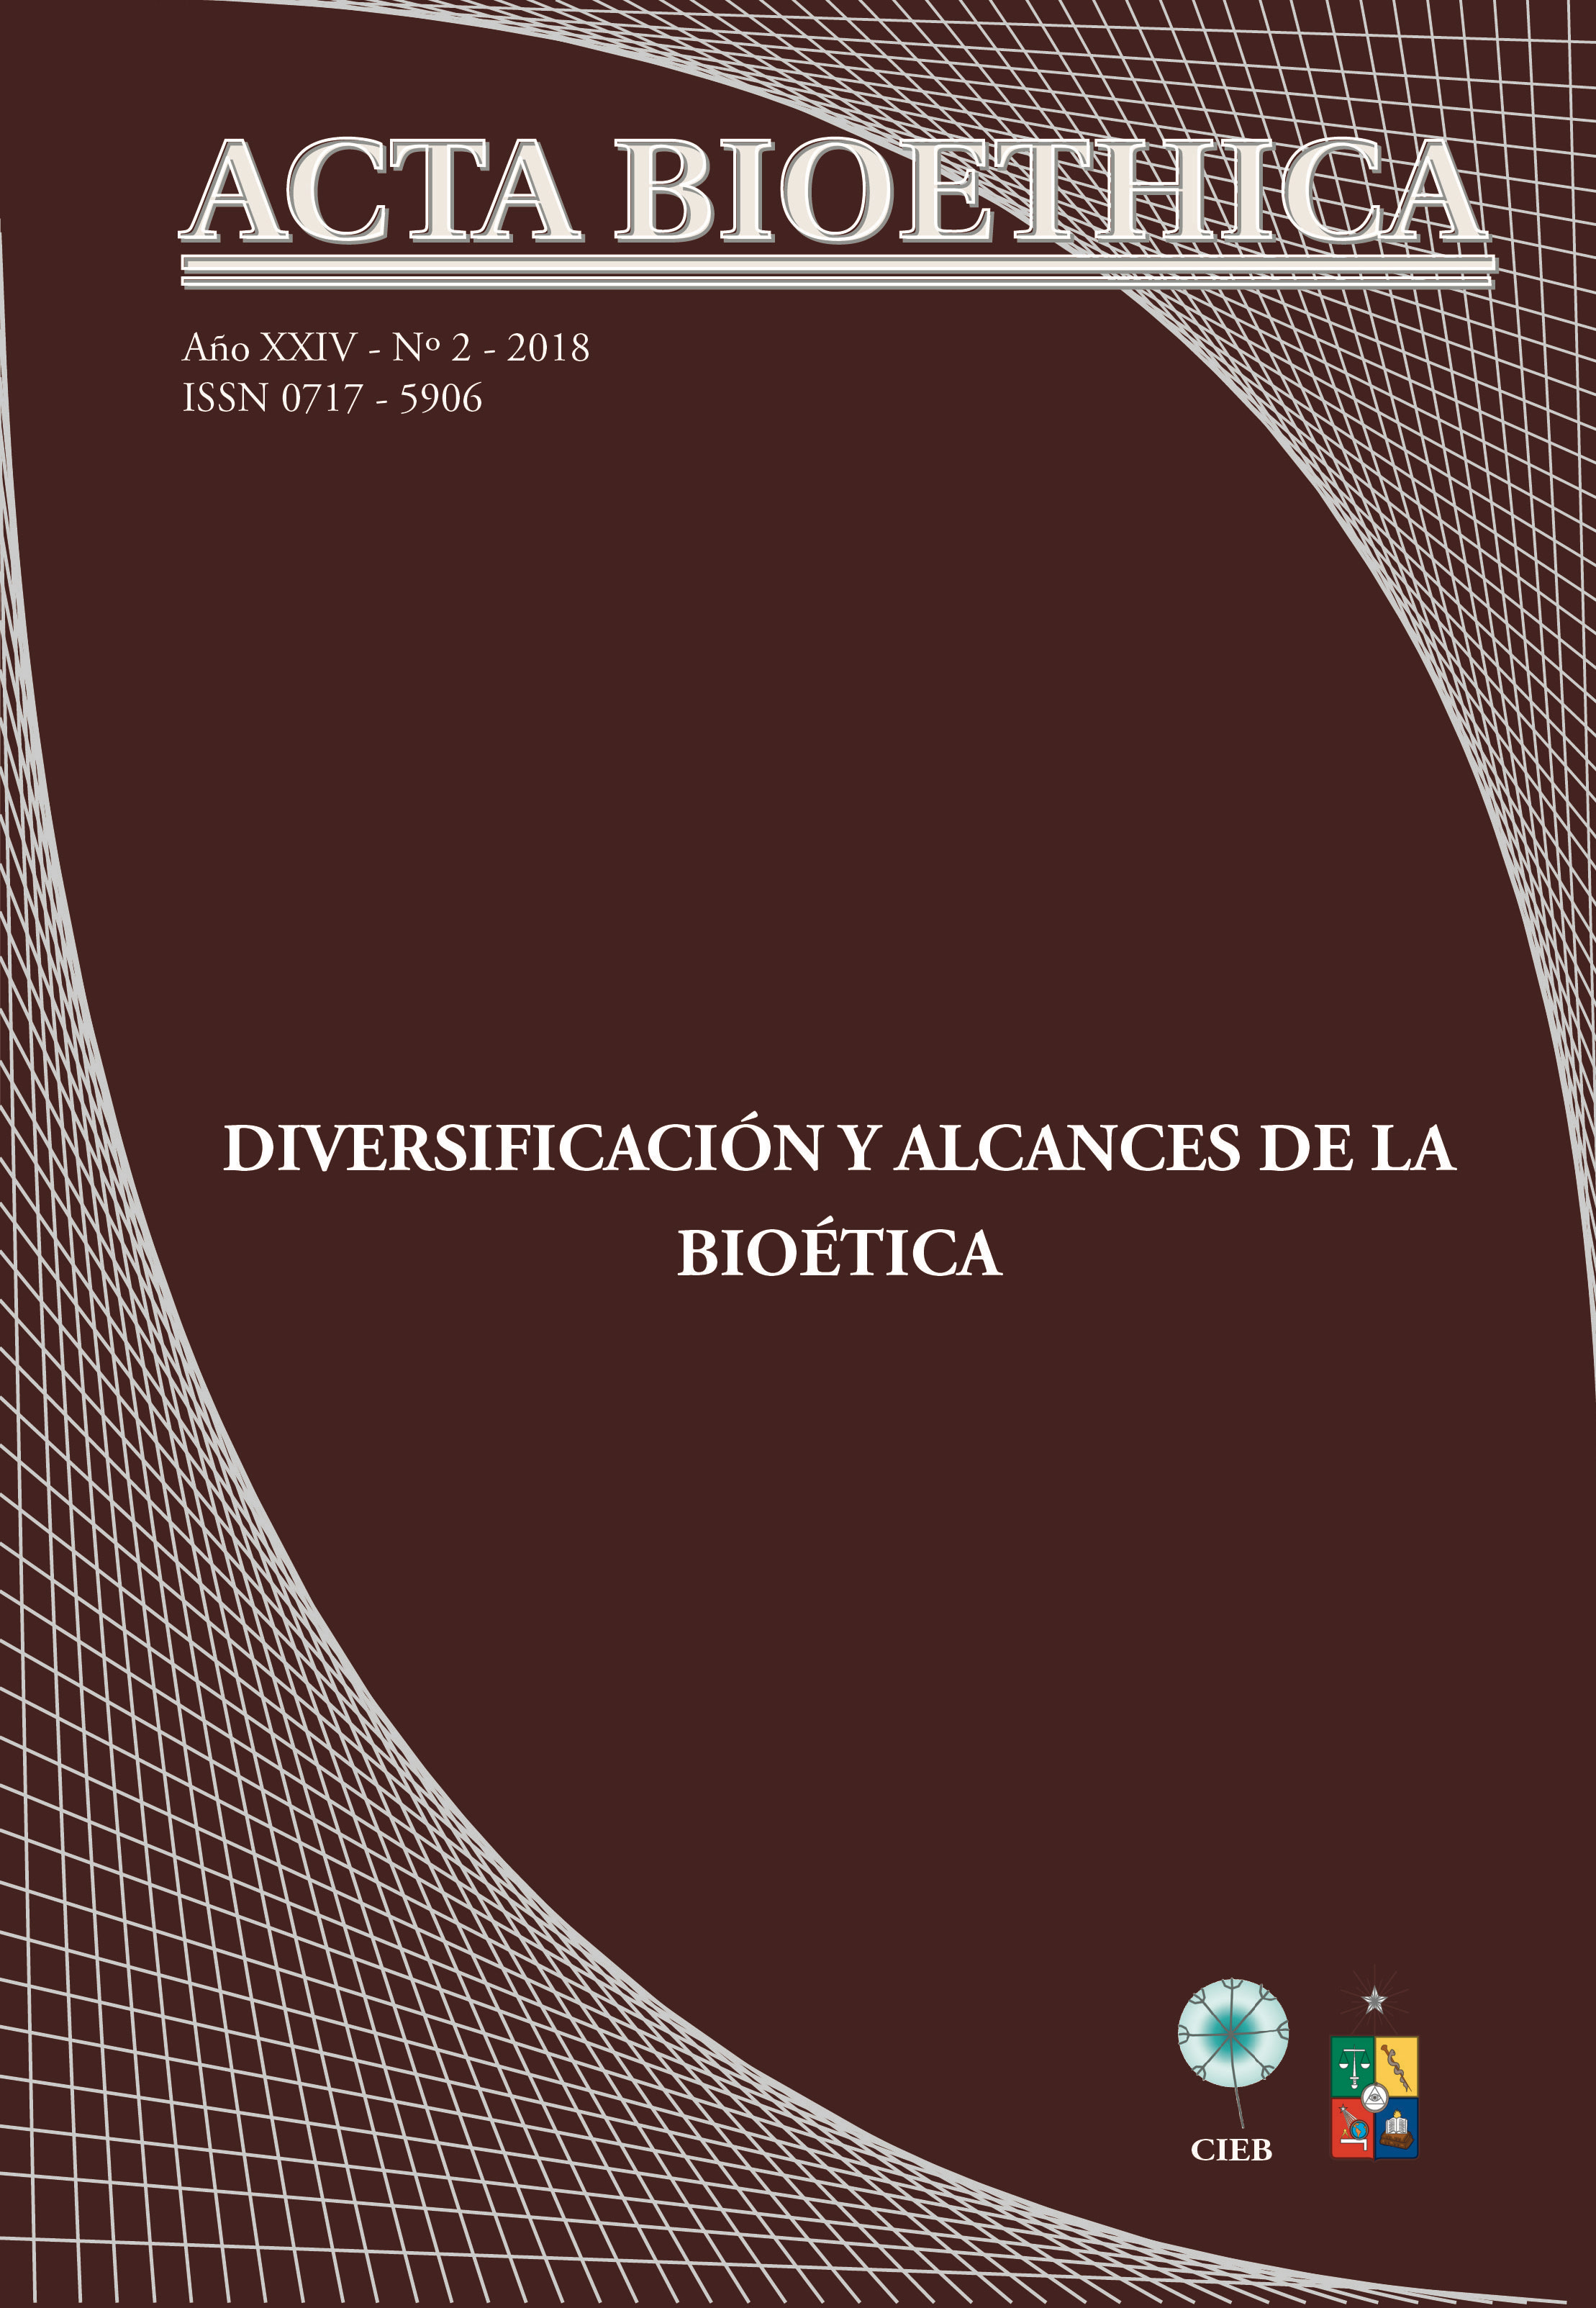 											View Vol. 24 No. 2 (2018): Diversificación y alcances de la bioética
										